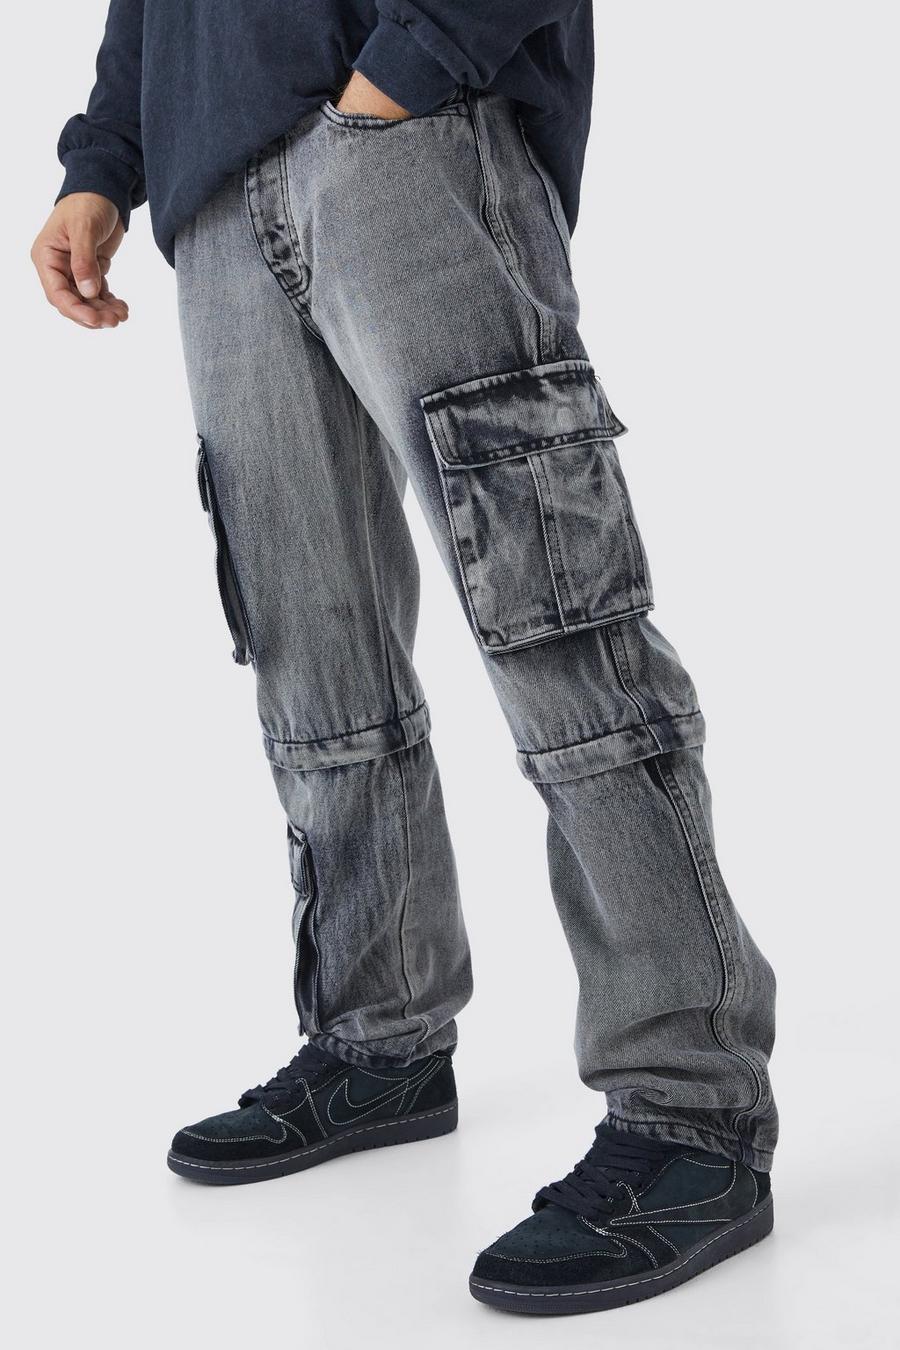 Lockere Cargo-Jeans mit Reißverschluss, Washed black